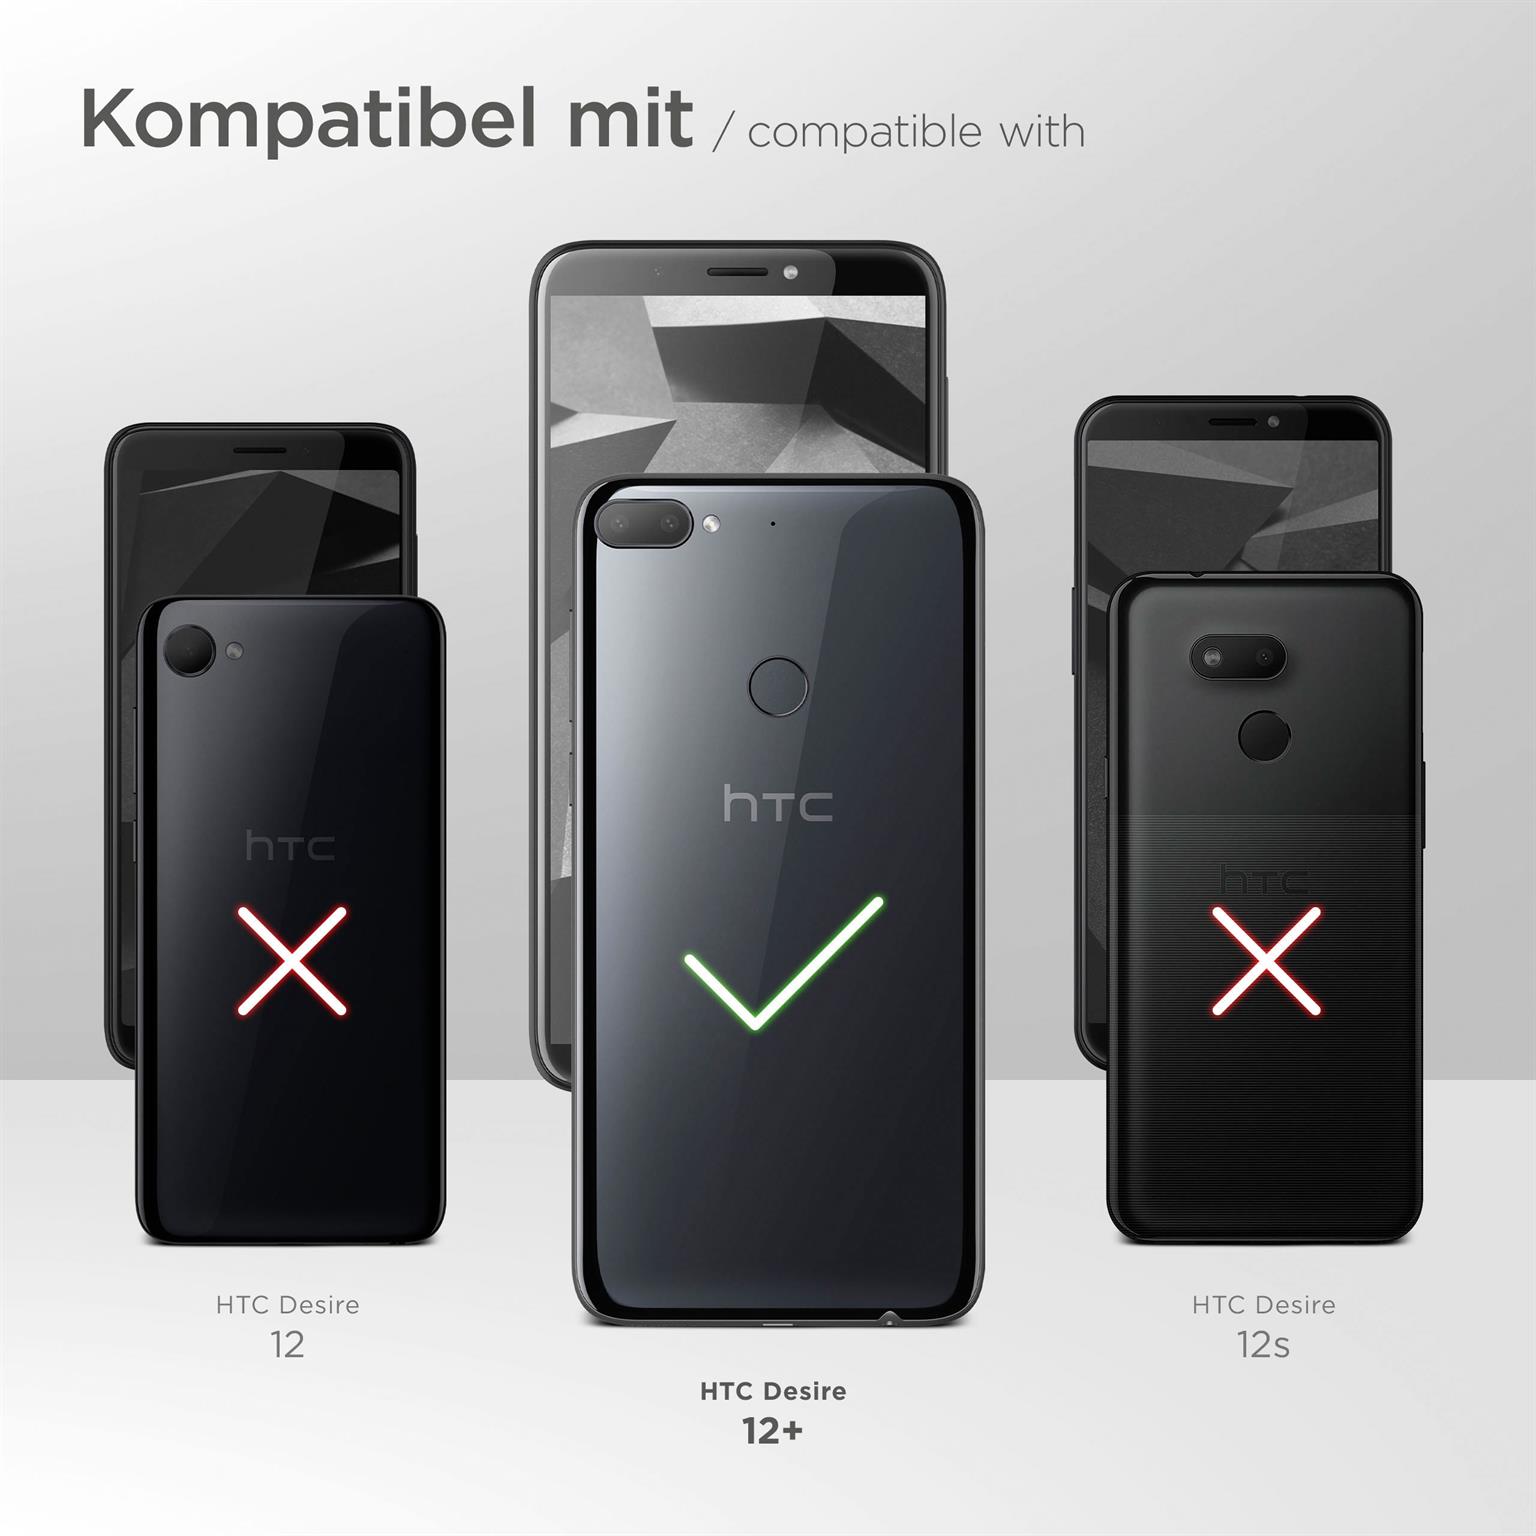 moex Aero Case für HTC Desire 12 Plus – Durchsichtige Hülle aus Silikon, Ultra Slim Handyhülle